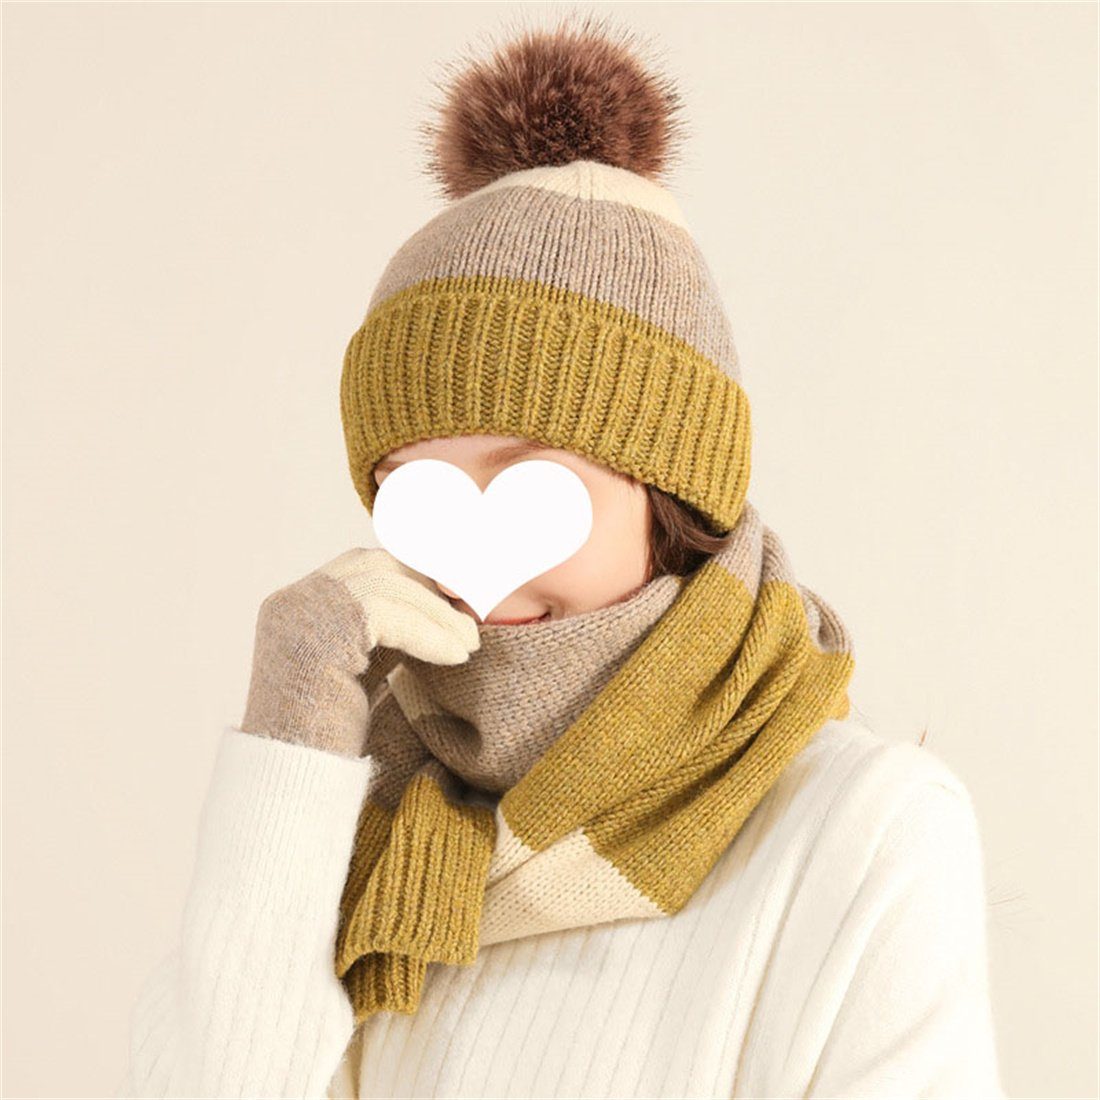 DÖRÖY Strickmütze Winter Bunte Modische Wollmütze, Warme Mütze Schal Handschuhe 3er Set Weiß + Gelb | Strickmützen